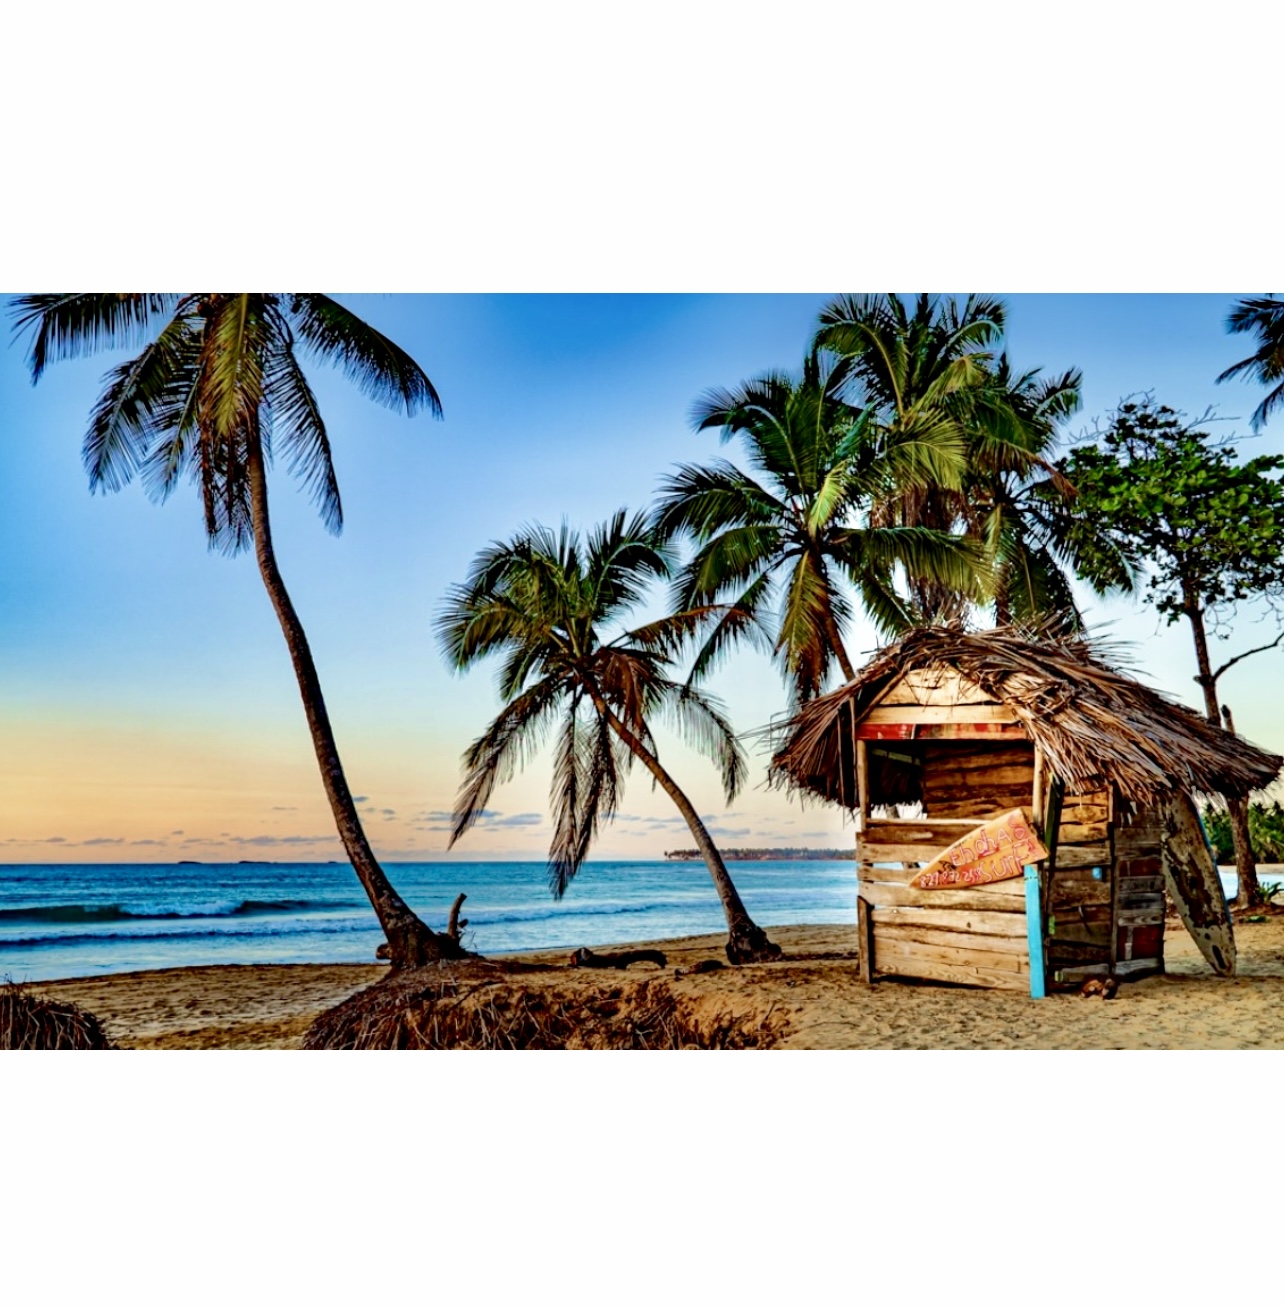 Une cabane de la République dominicaine sur la plage avec des palmiers en arrière-plan.